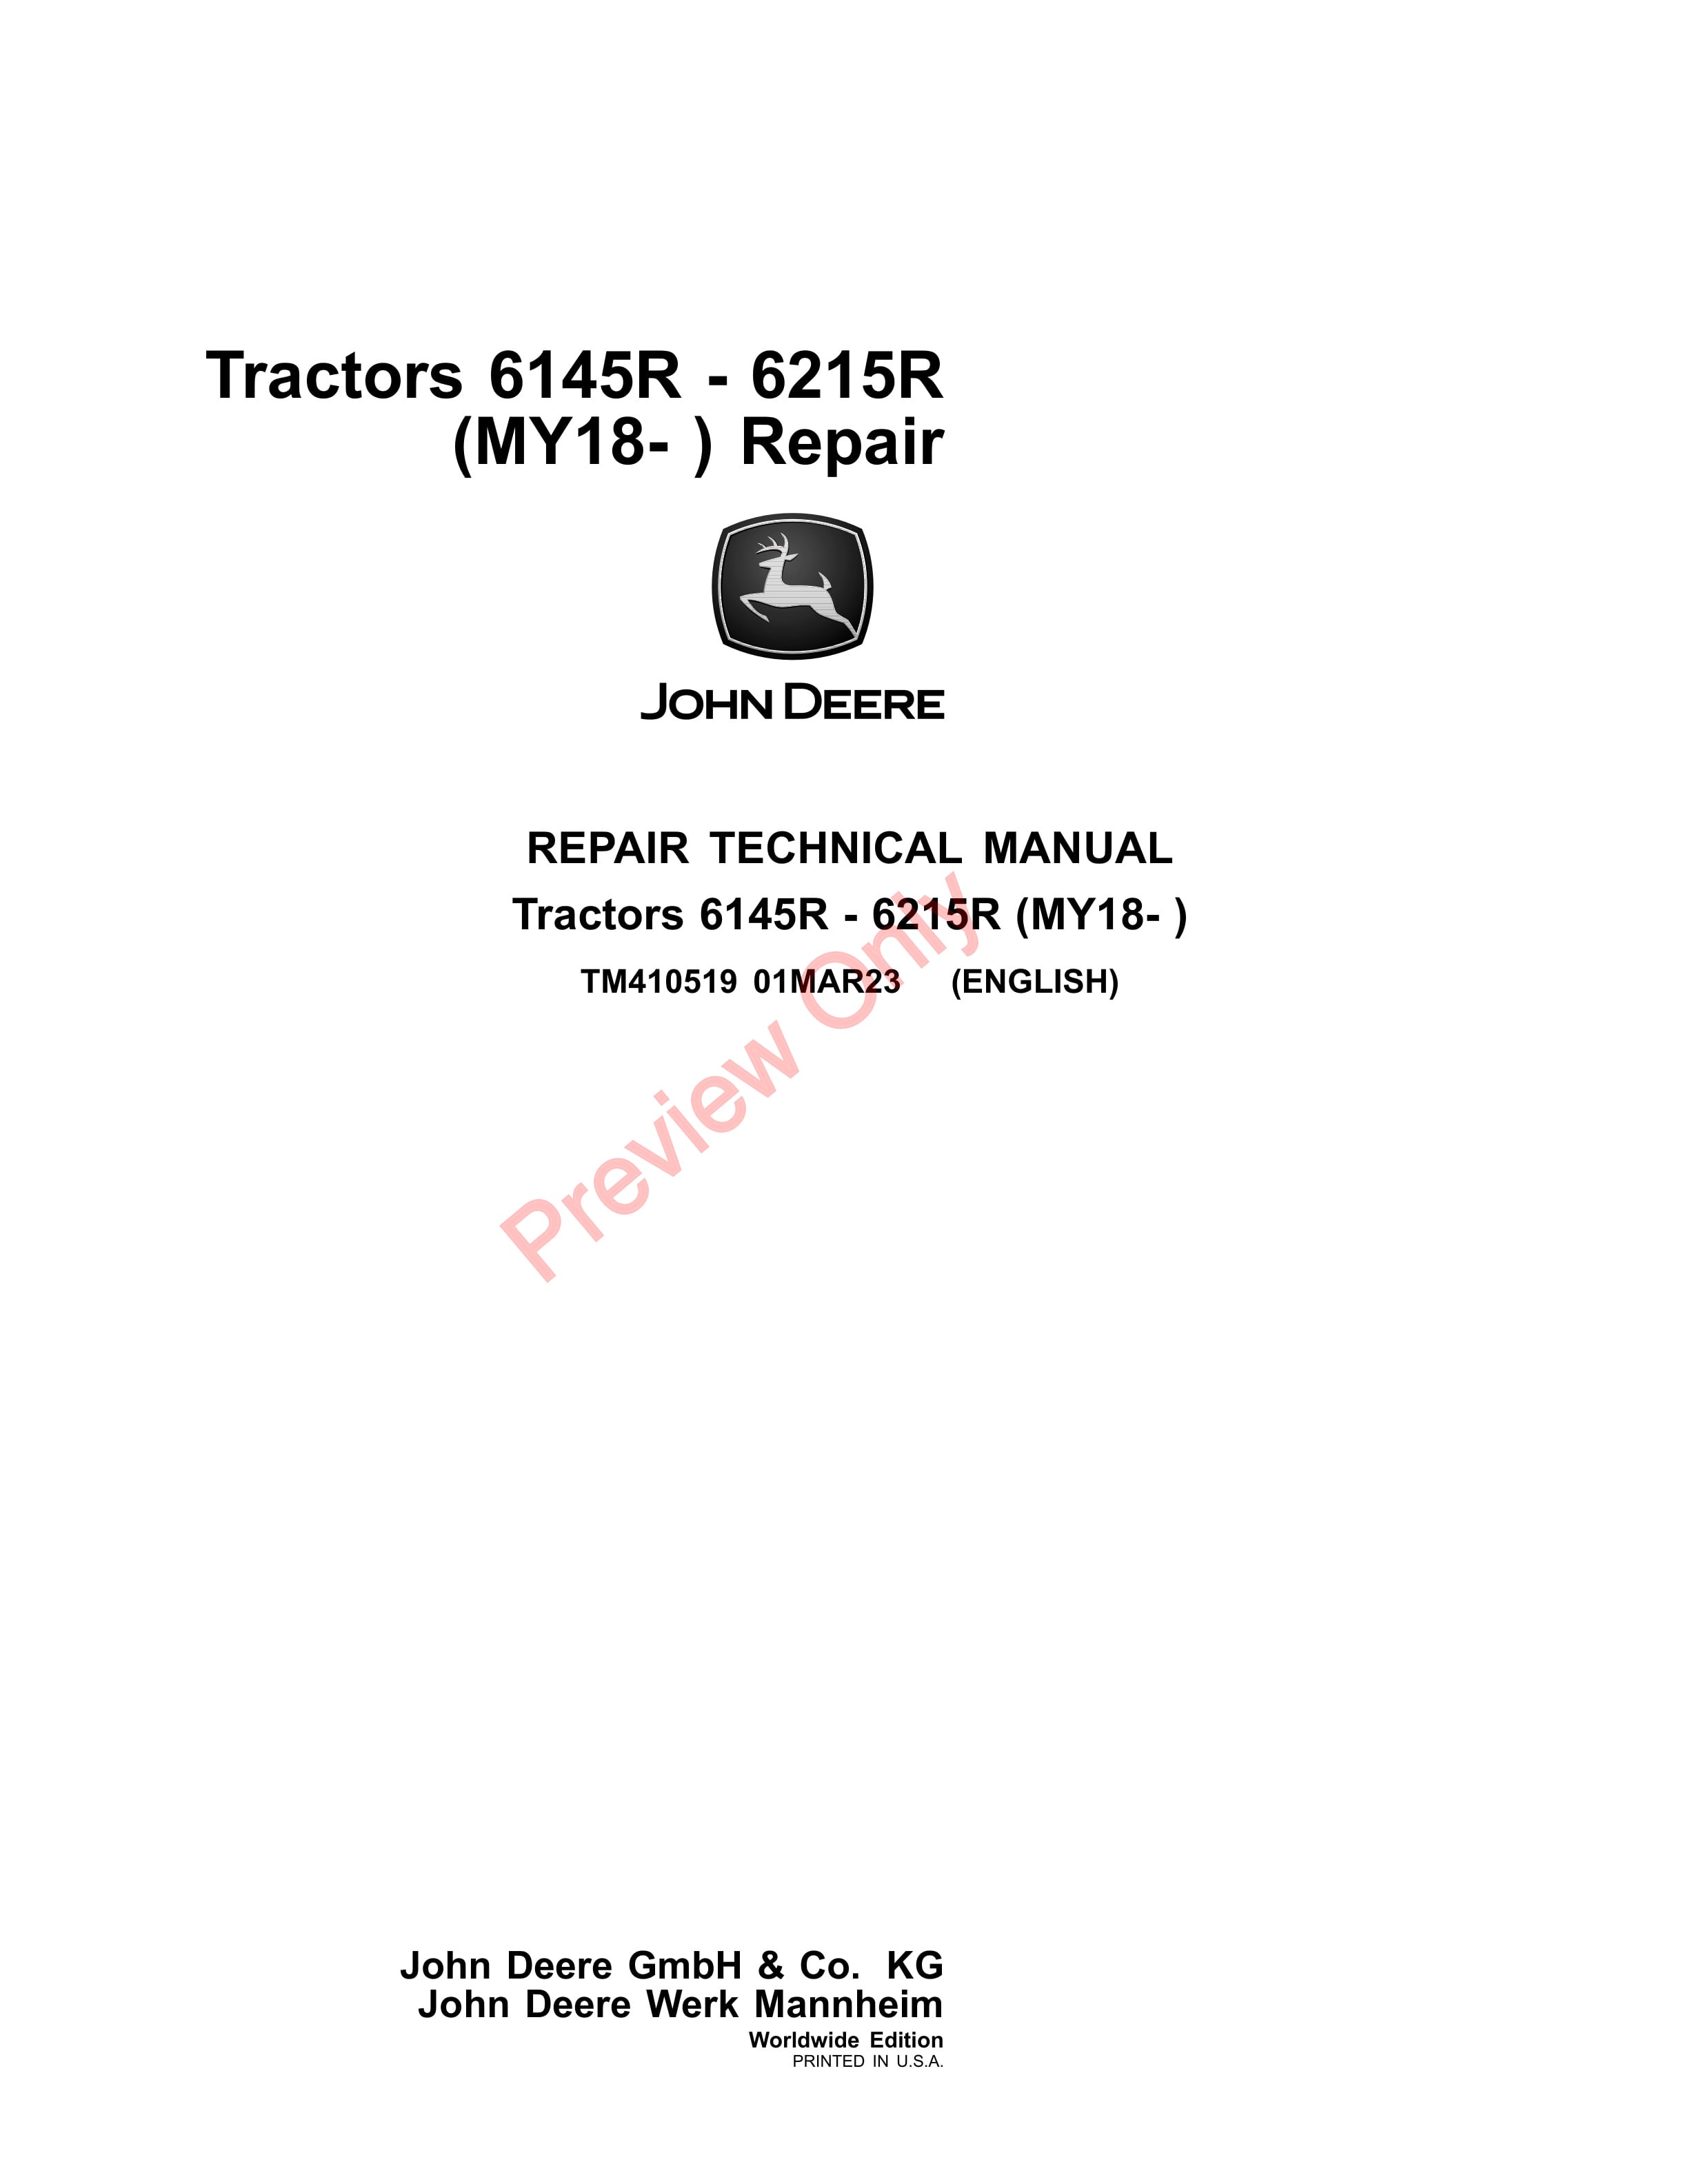 John Deere Tractors 6145R 6215R MY18 Repair Technical Manual TM410519 01MAR23 1